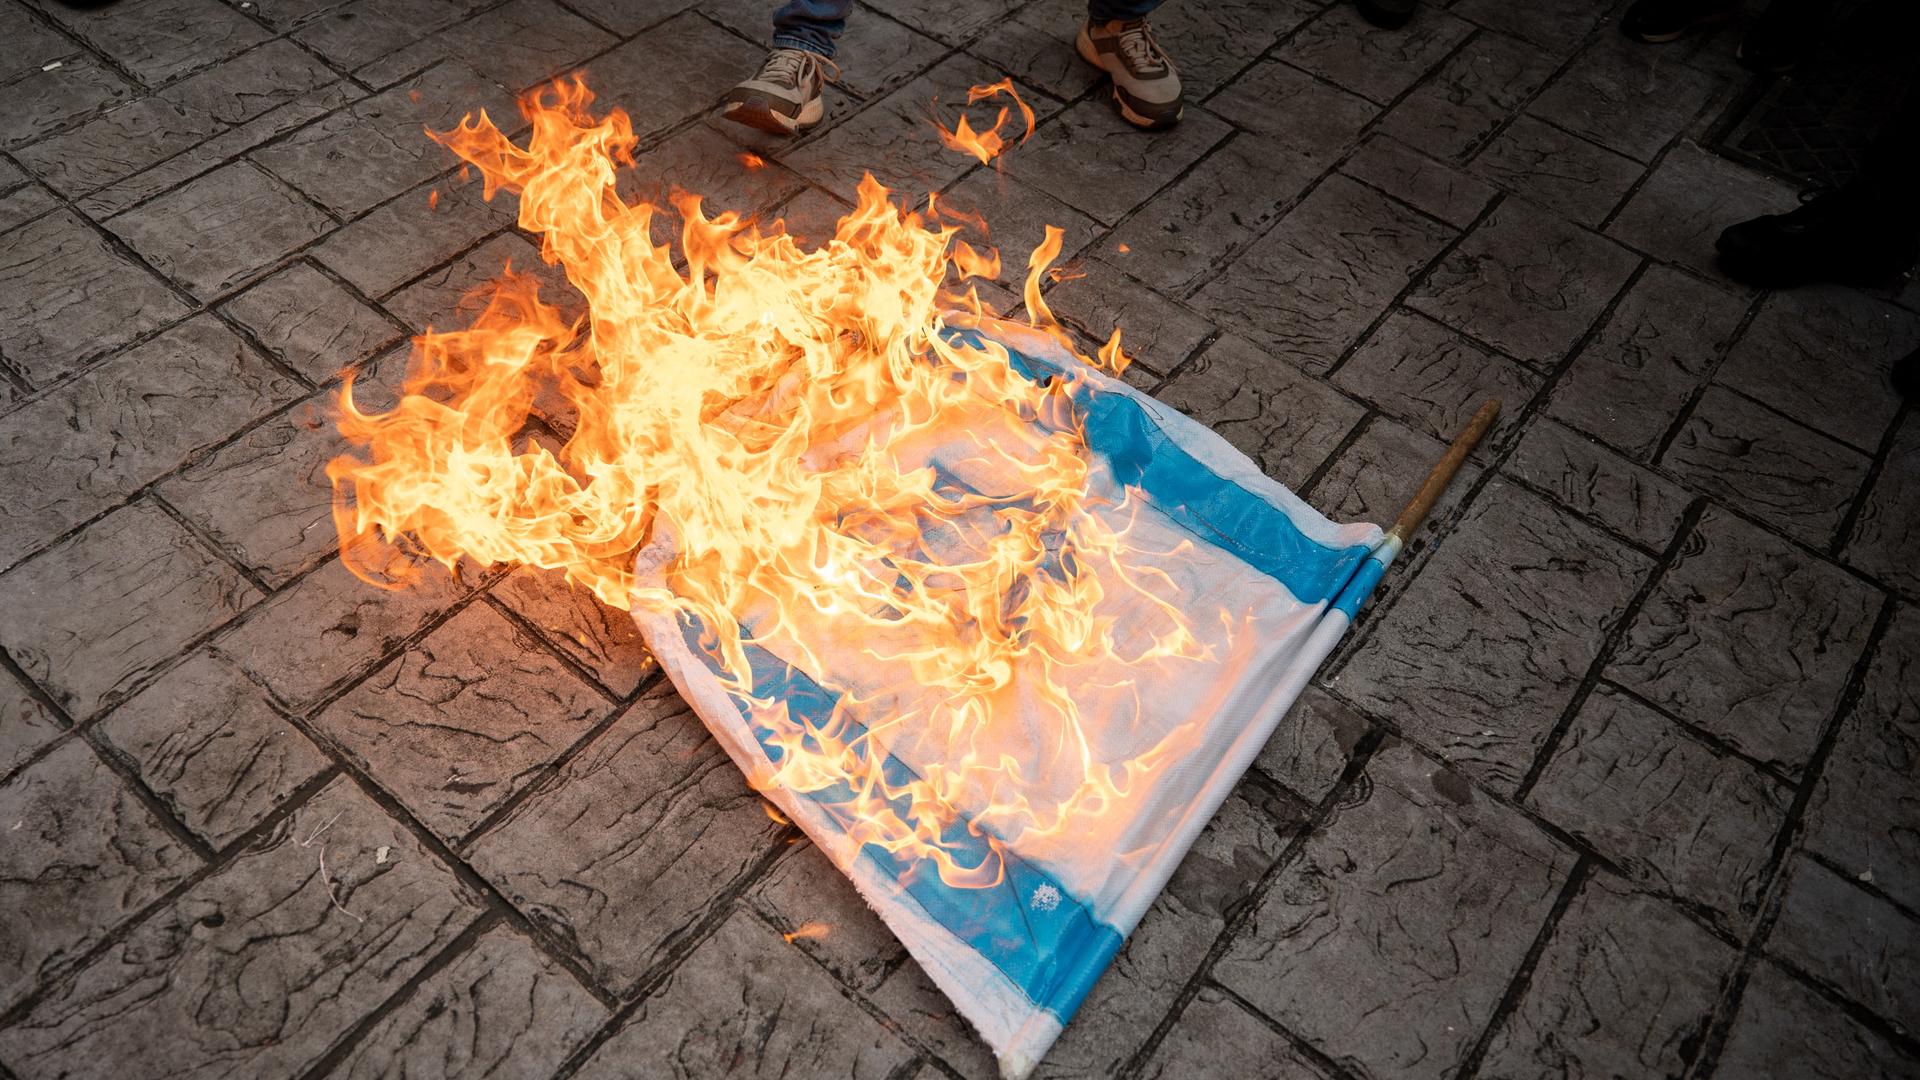 Demonstranten in Venezuela verbrennen eine israelische Flagge.